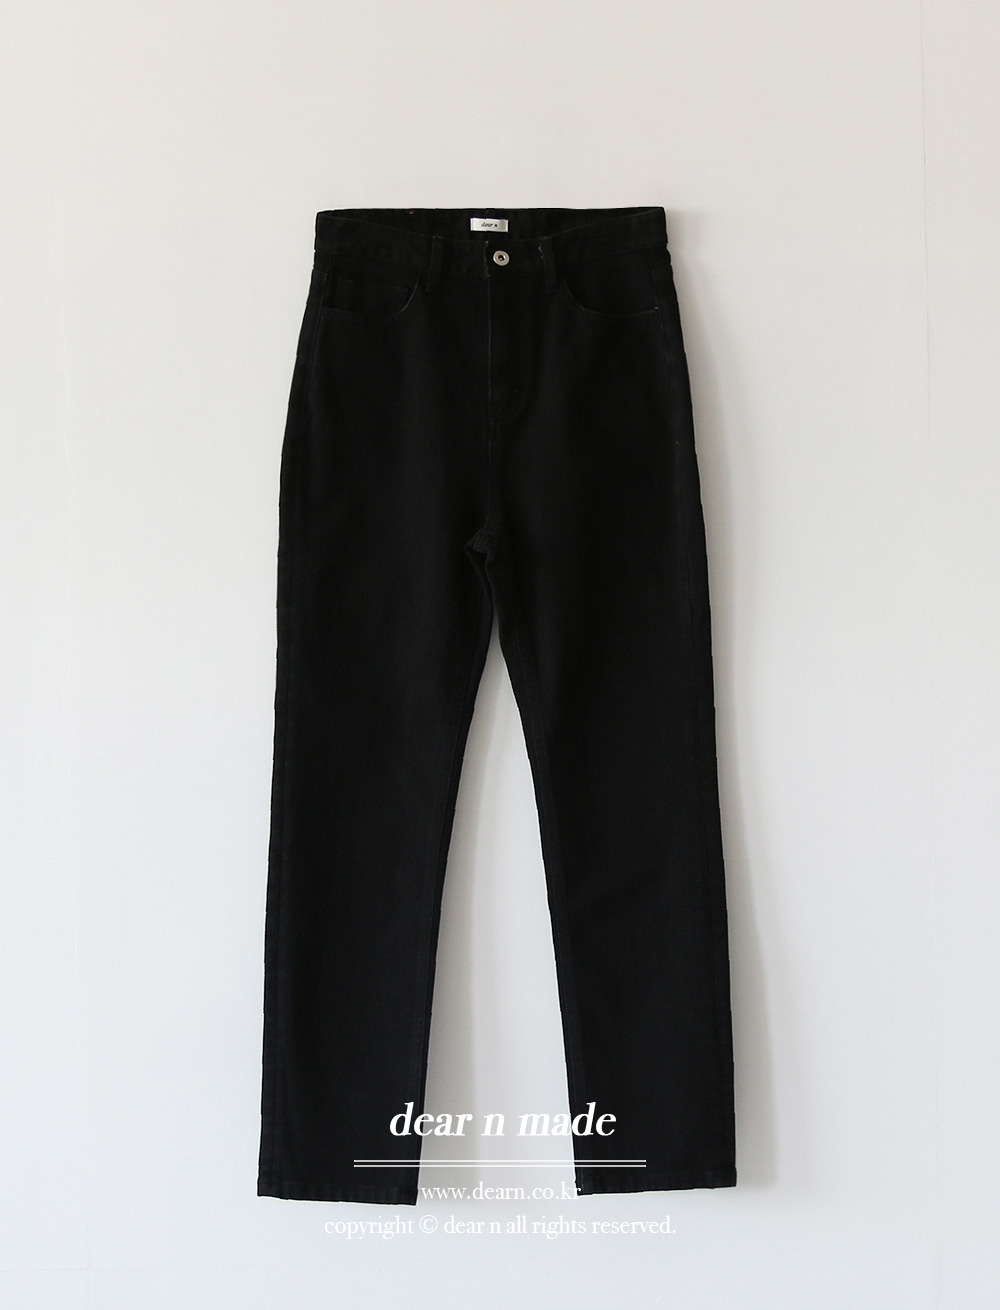 (dear n) slim black pants